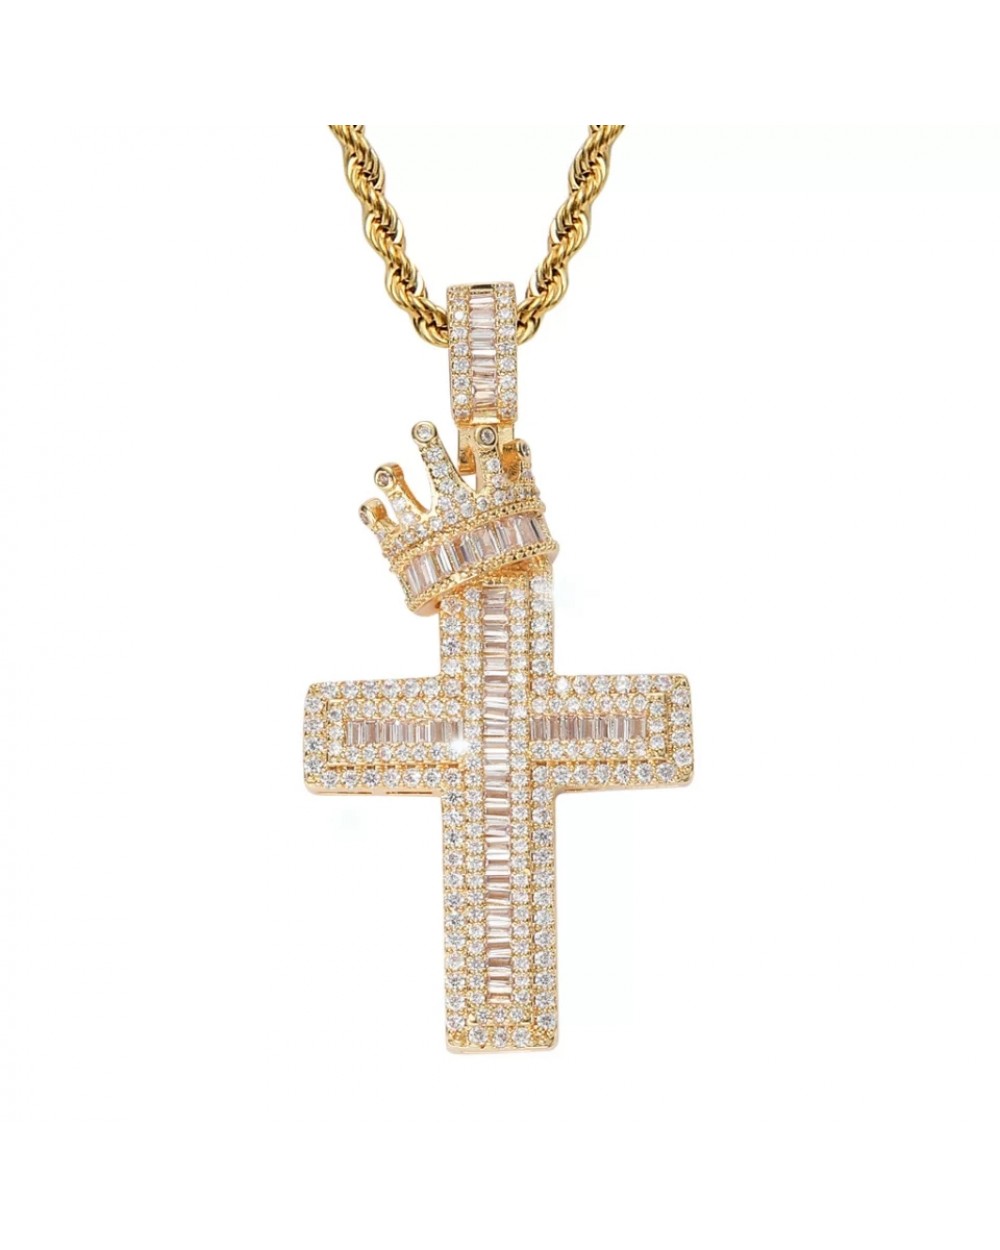 Pandantiv cruce cu coroană încrustată cu cristale semiprețioase